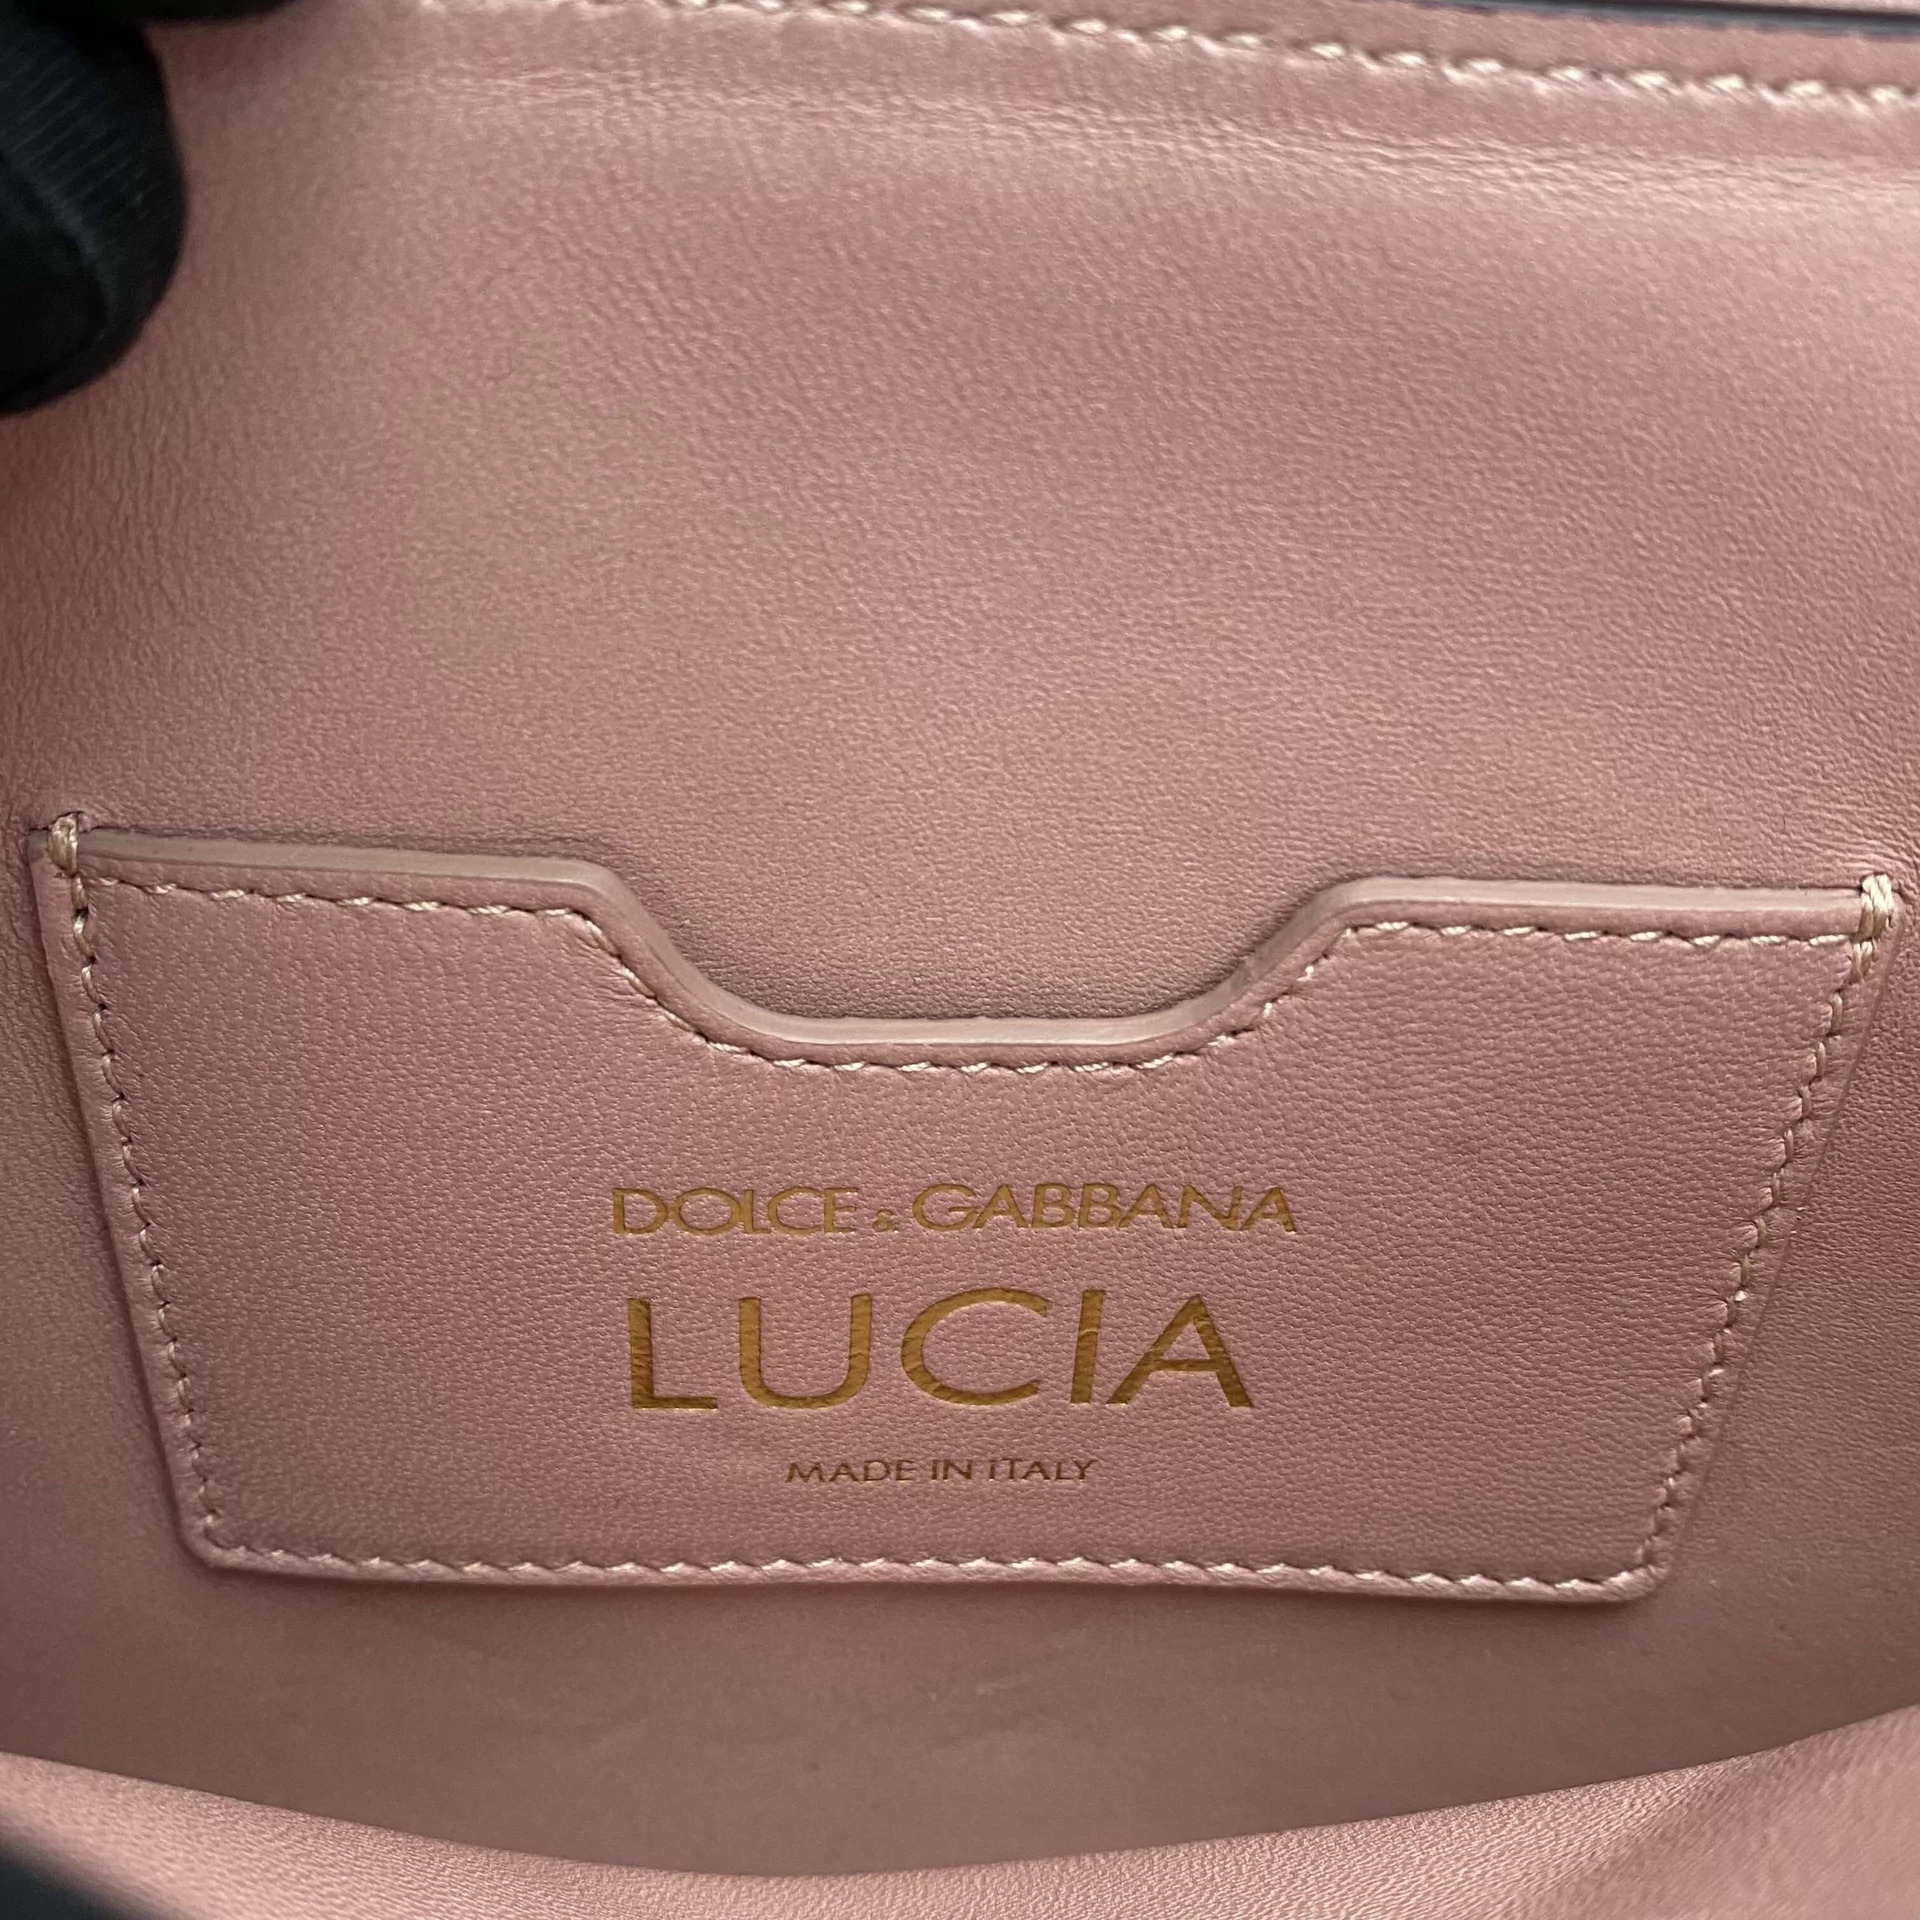 Bolsa Dolce & Gabbana Lucia Bordada